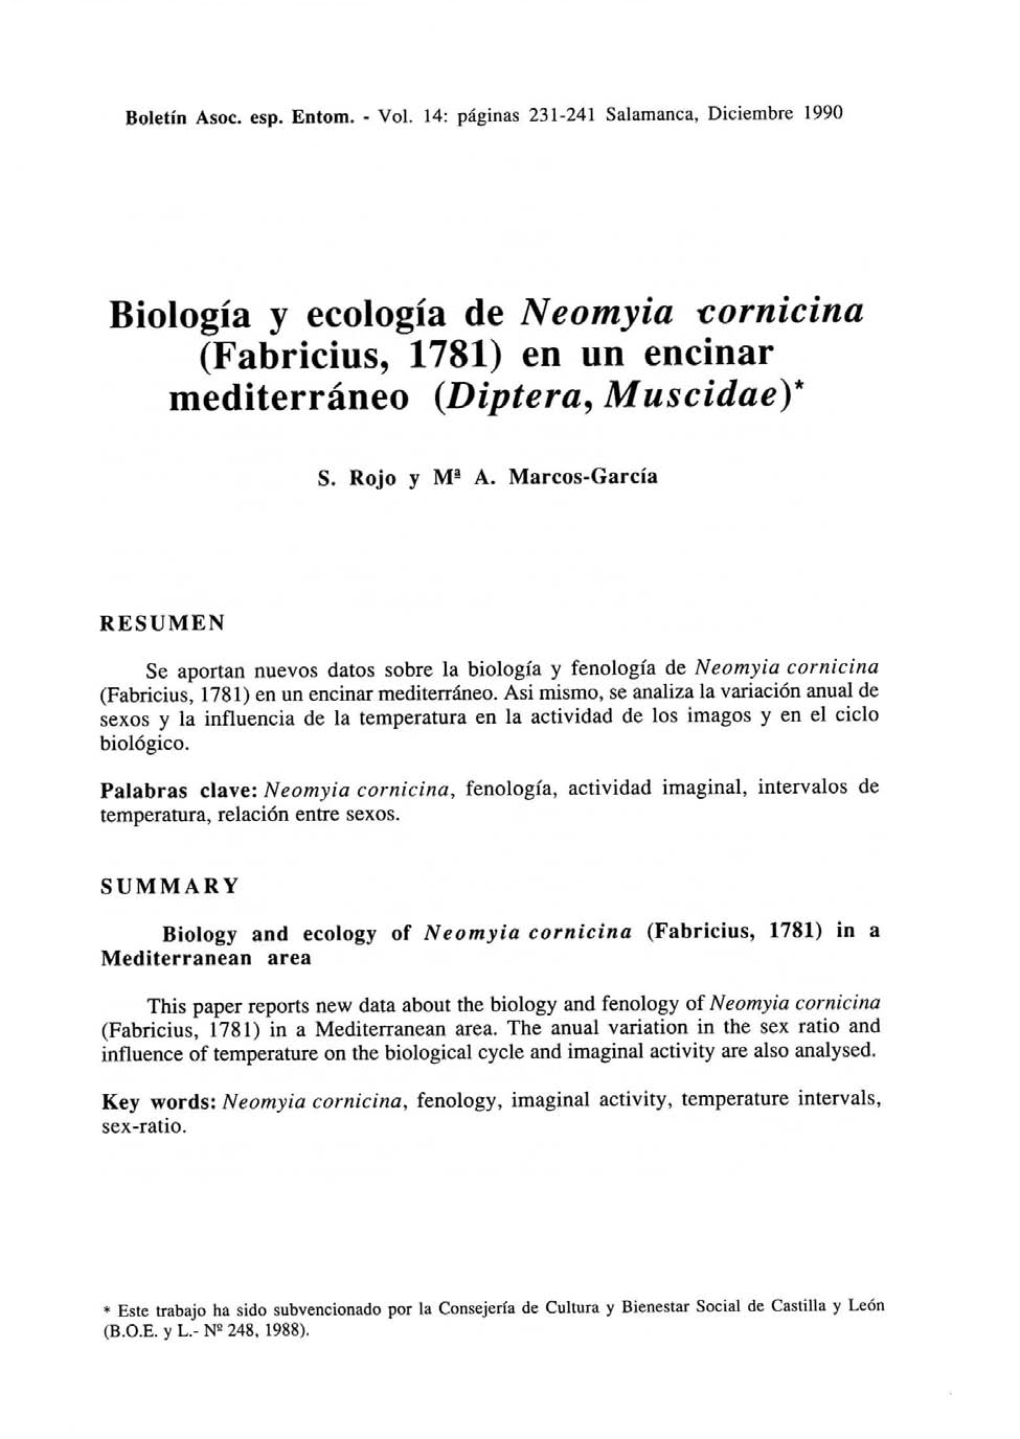 Biología Y Ecología De Neomyia Vomitina (Fabricáis, 1781) En Un Encinar Mediterráneo (Díptera, Muscidae)*